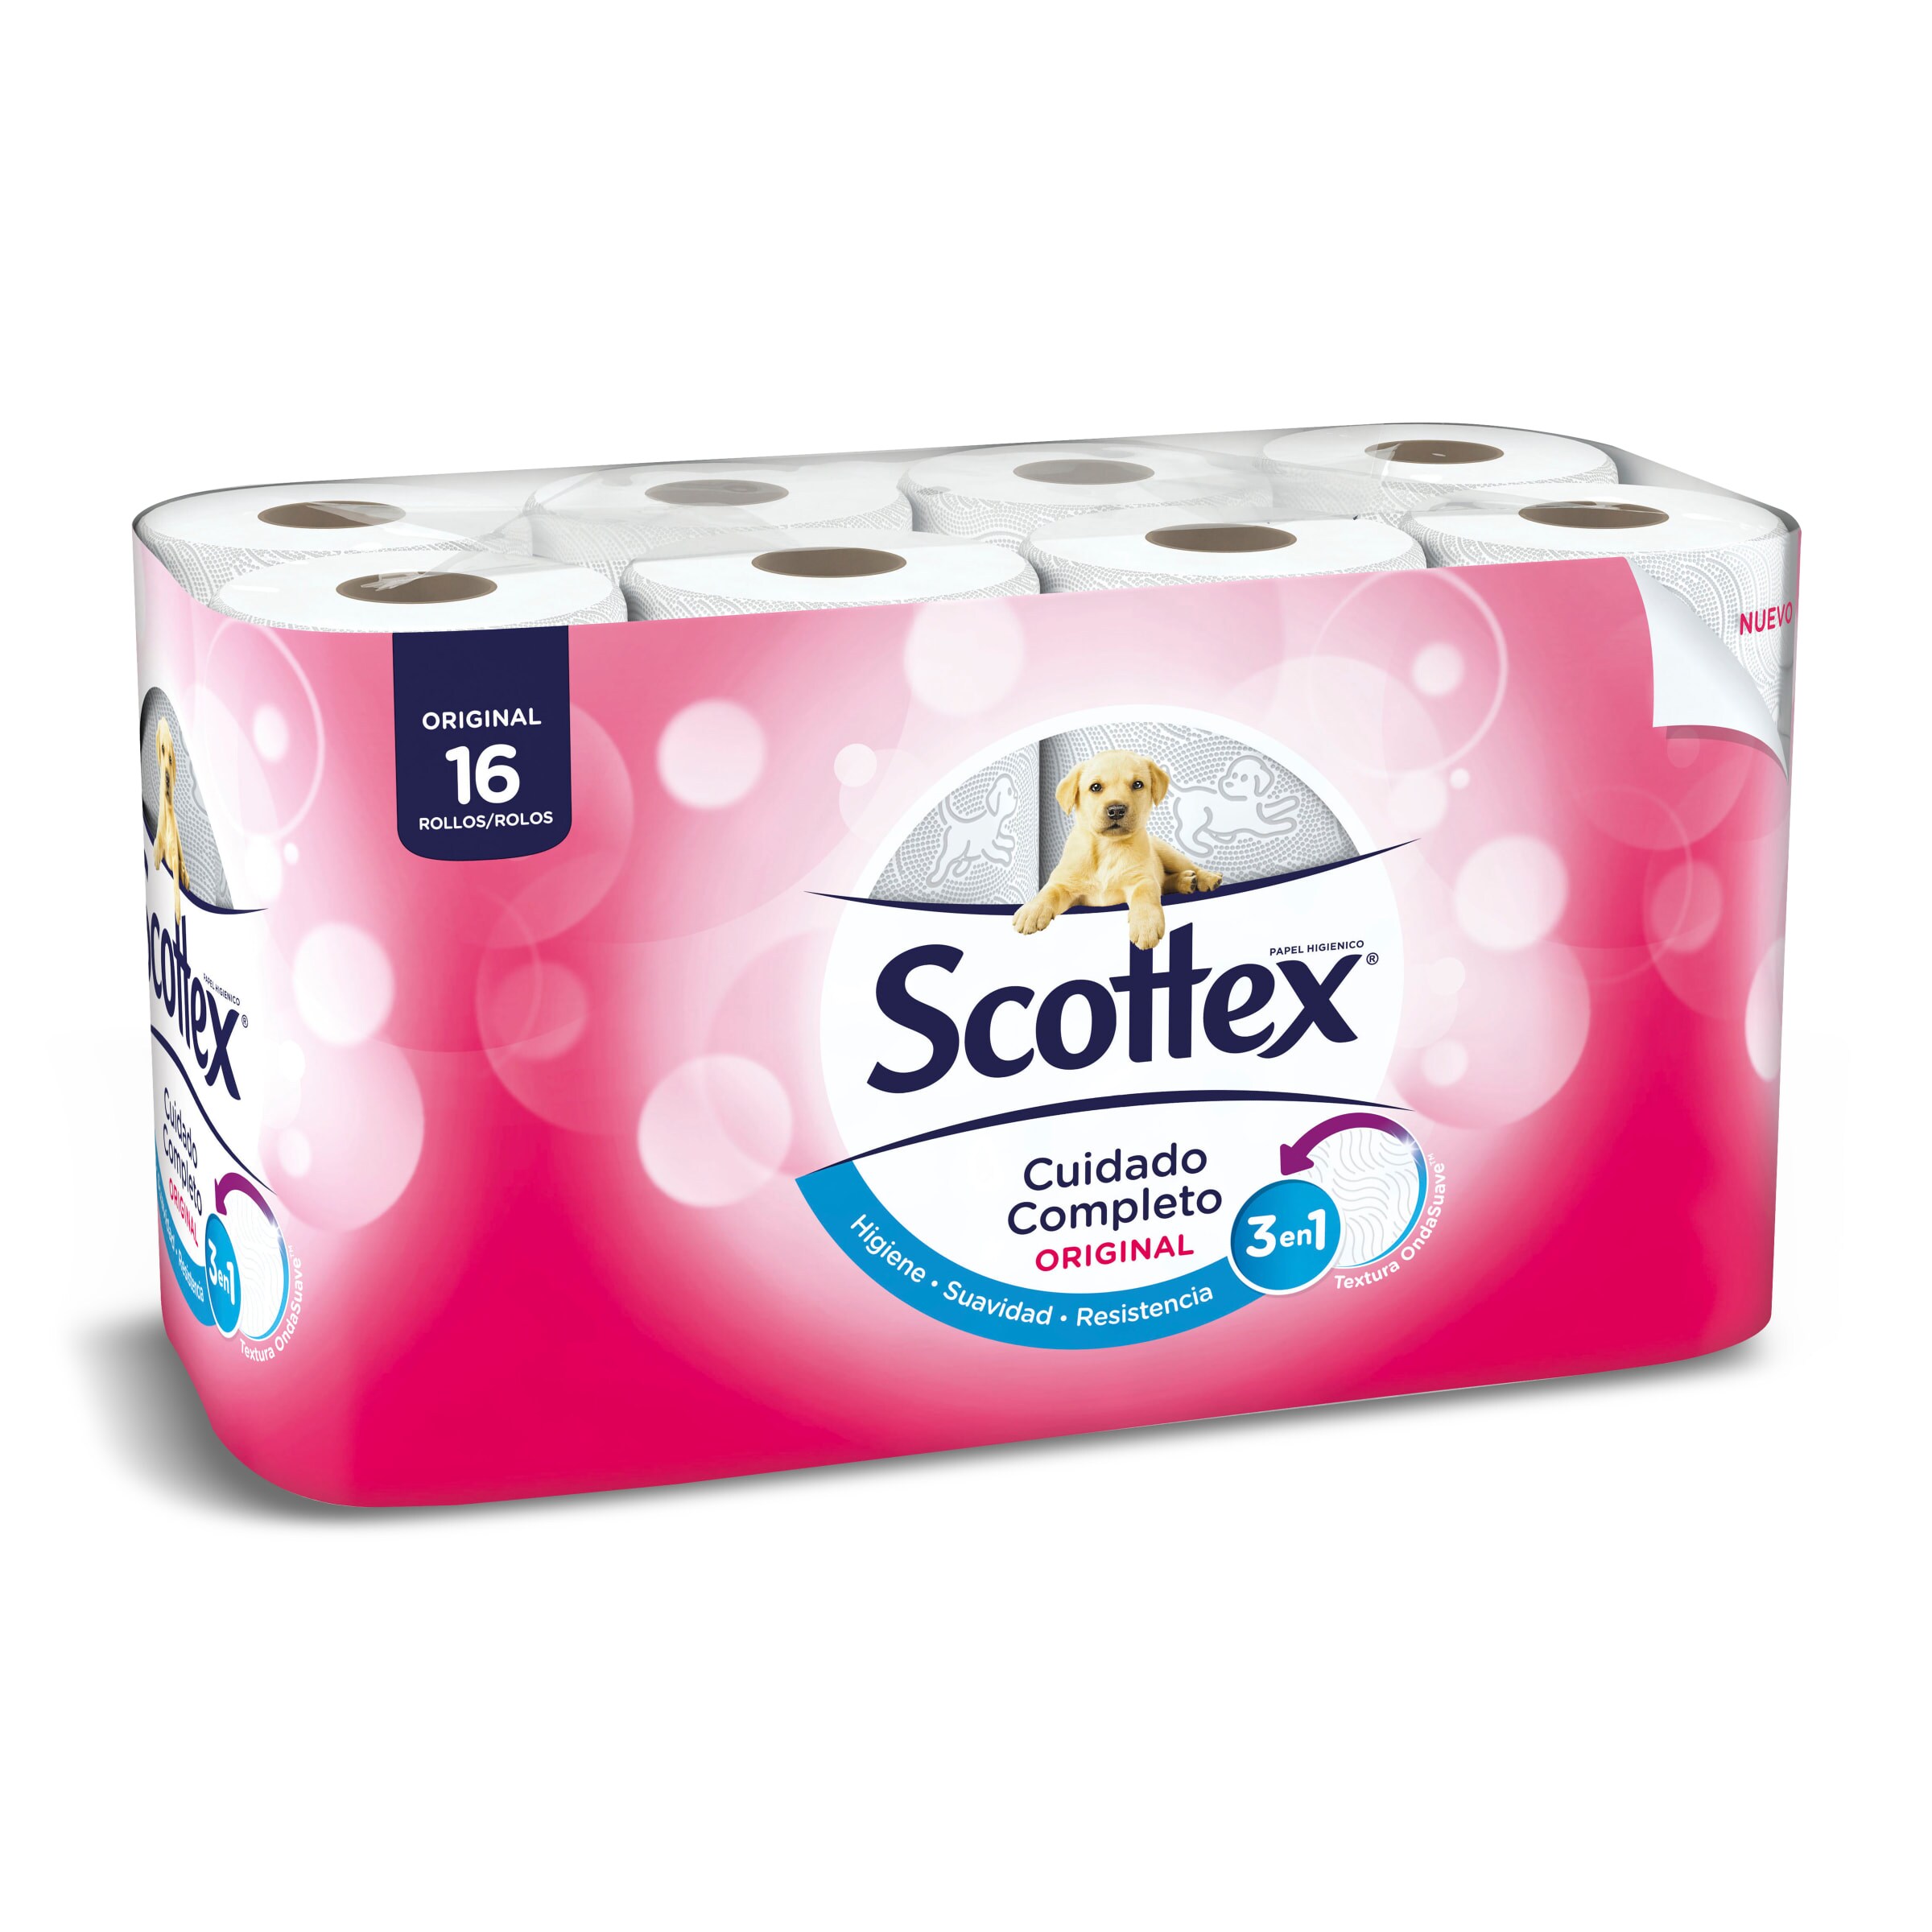 Papel higiénico original Scottex bolsa 16 unidades - Supermercados DIA